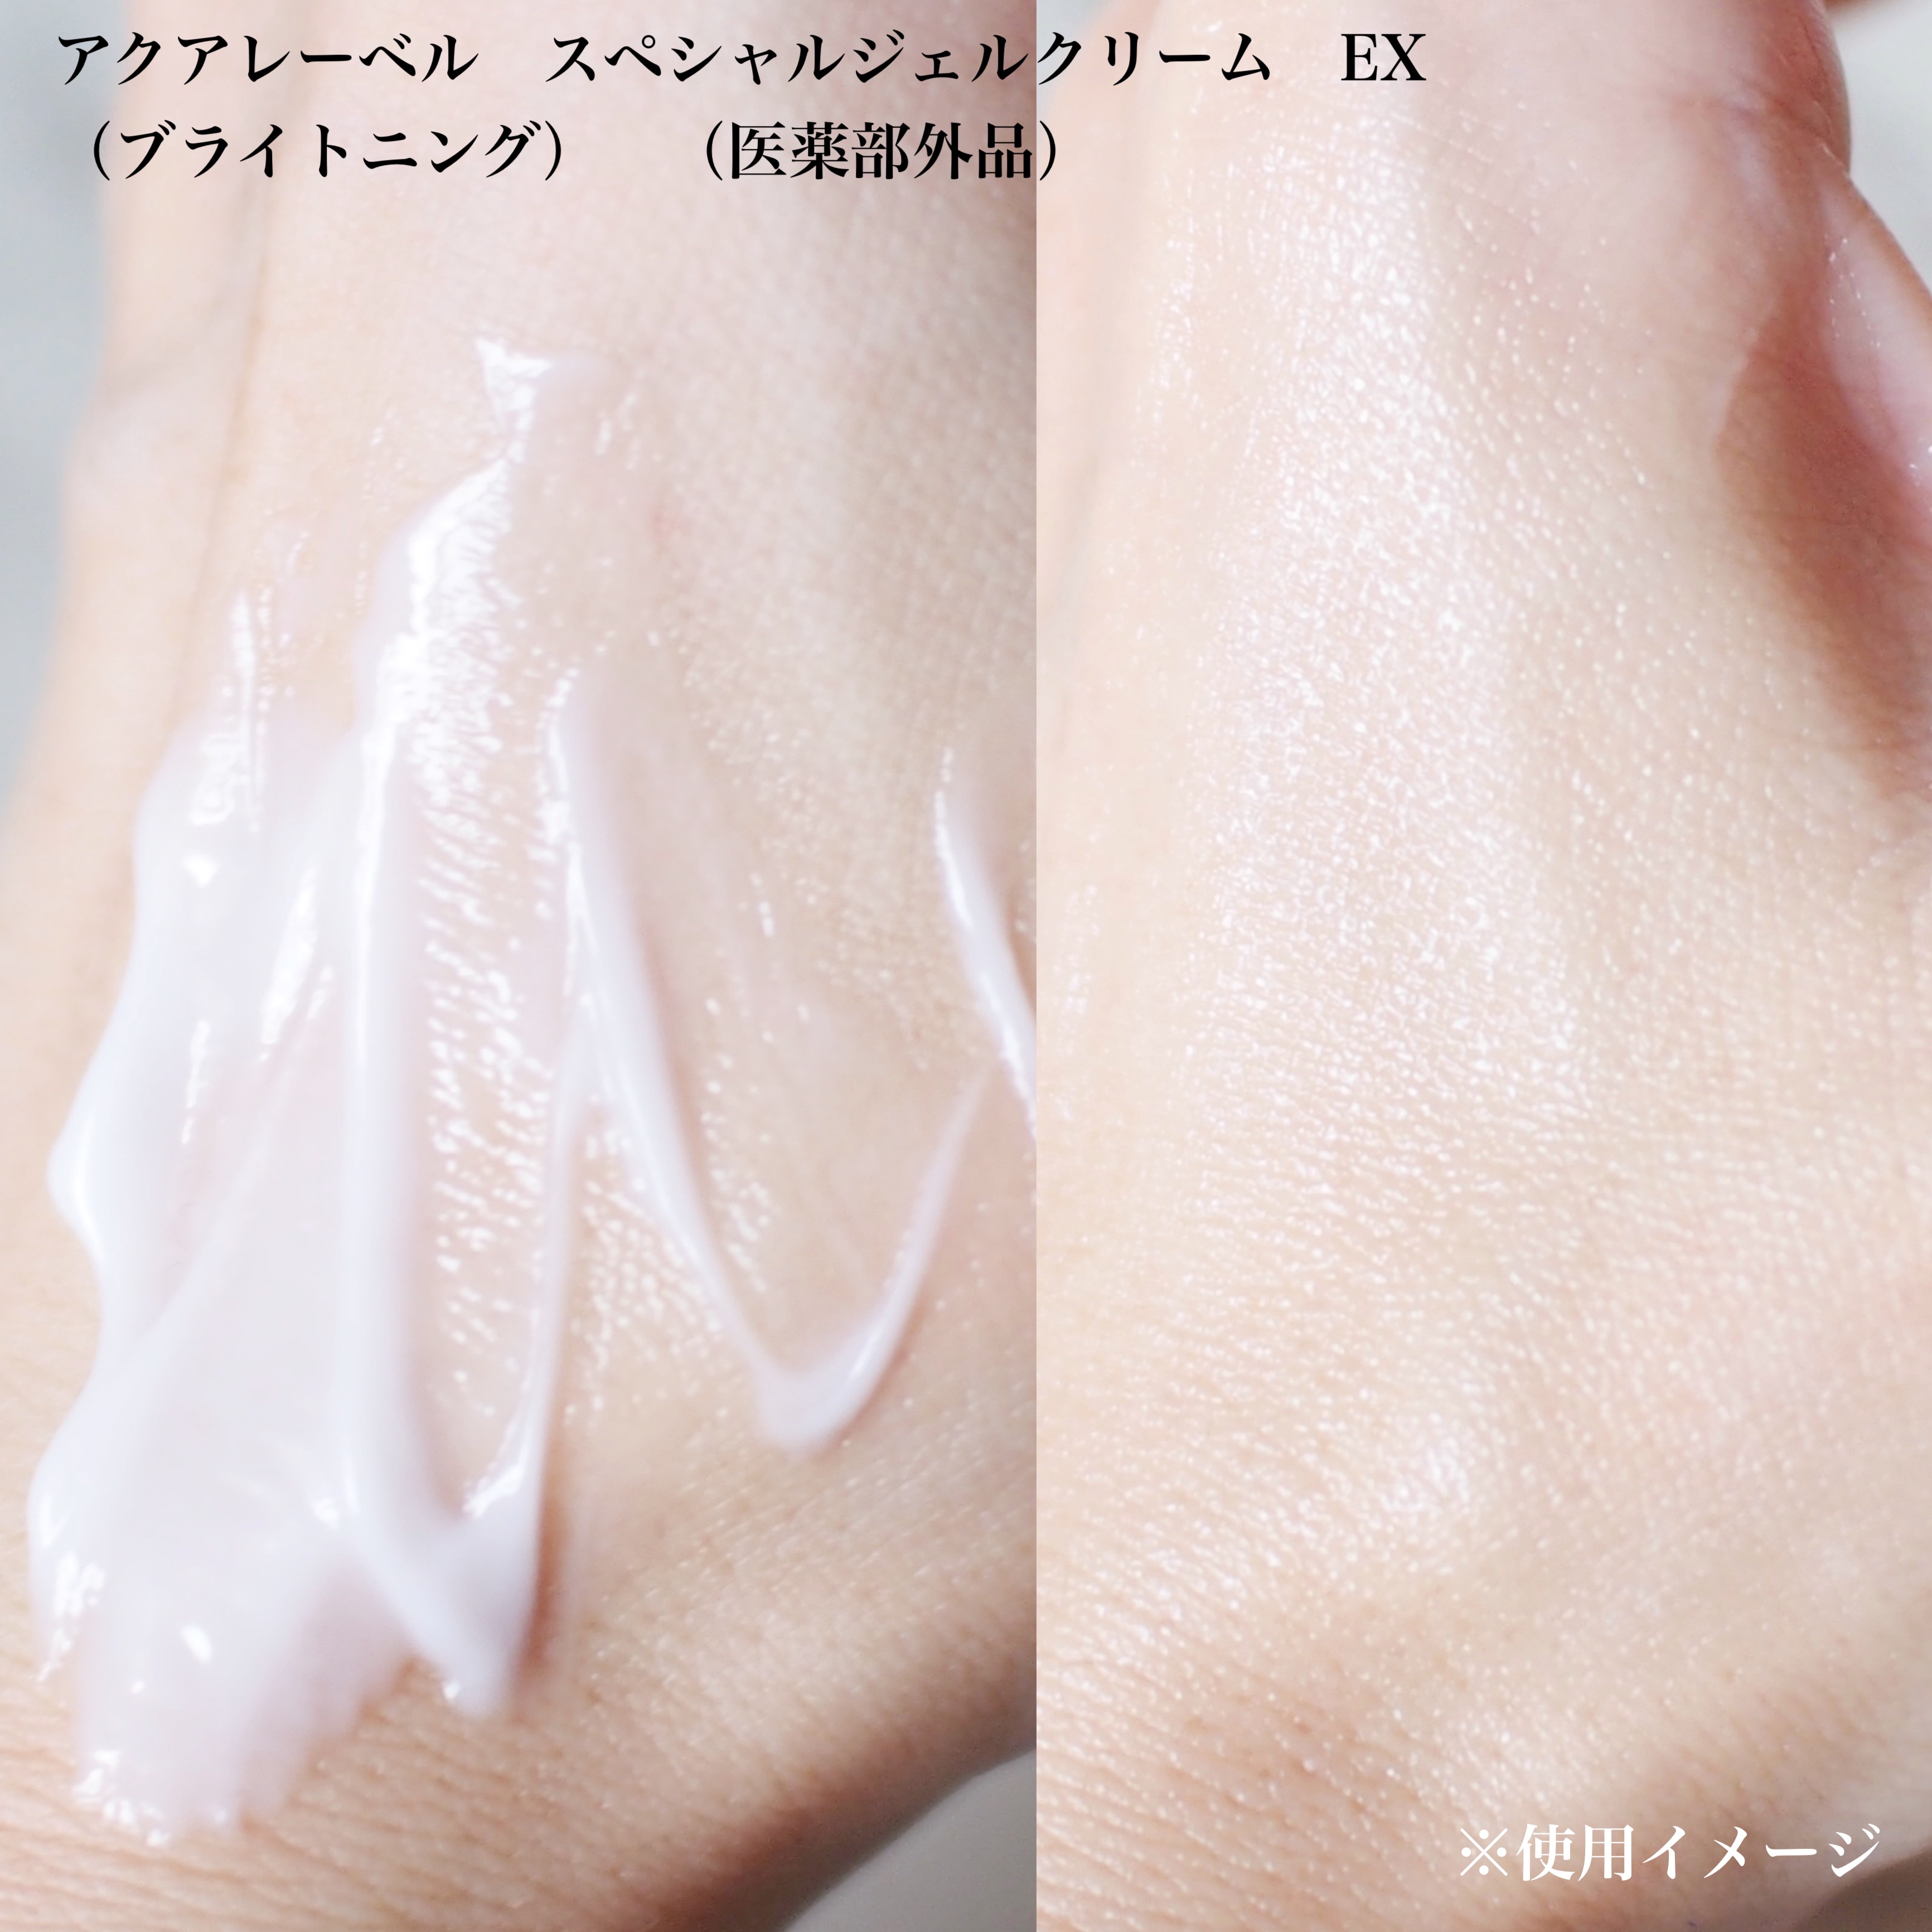 アクアレーベルのオールインワン化粧品 スペシャルジェルクリーム EX(モイスト)他、3商品を使った口コミ -月２１日、アミノ酸研究の集大成『 アクアレーベル』がリニューアル✨ by YURI(乾燥肌) LIPS